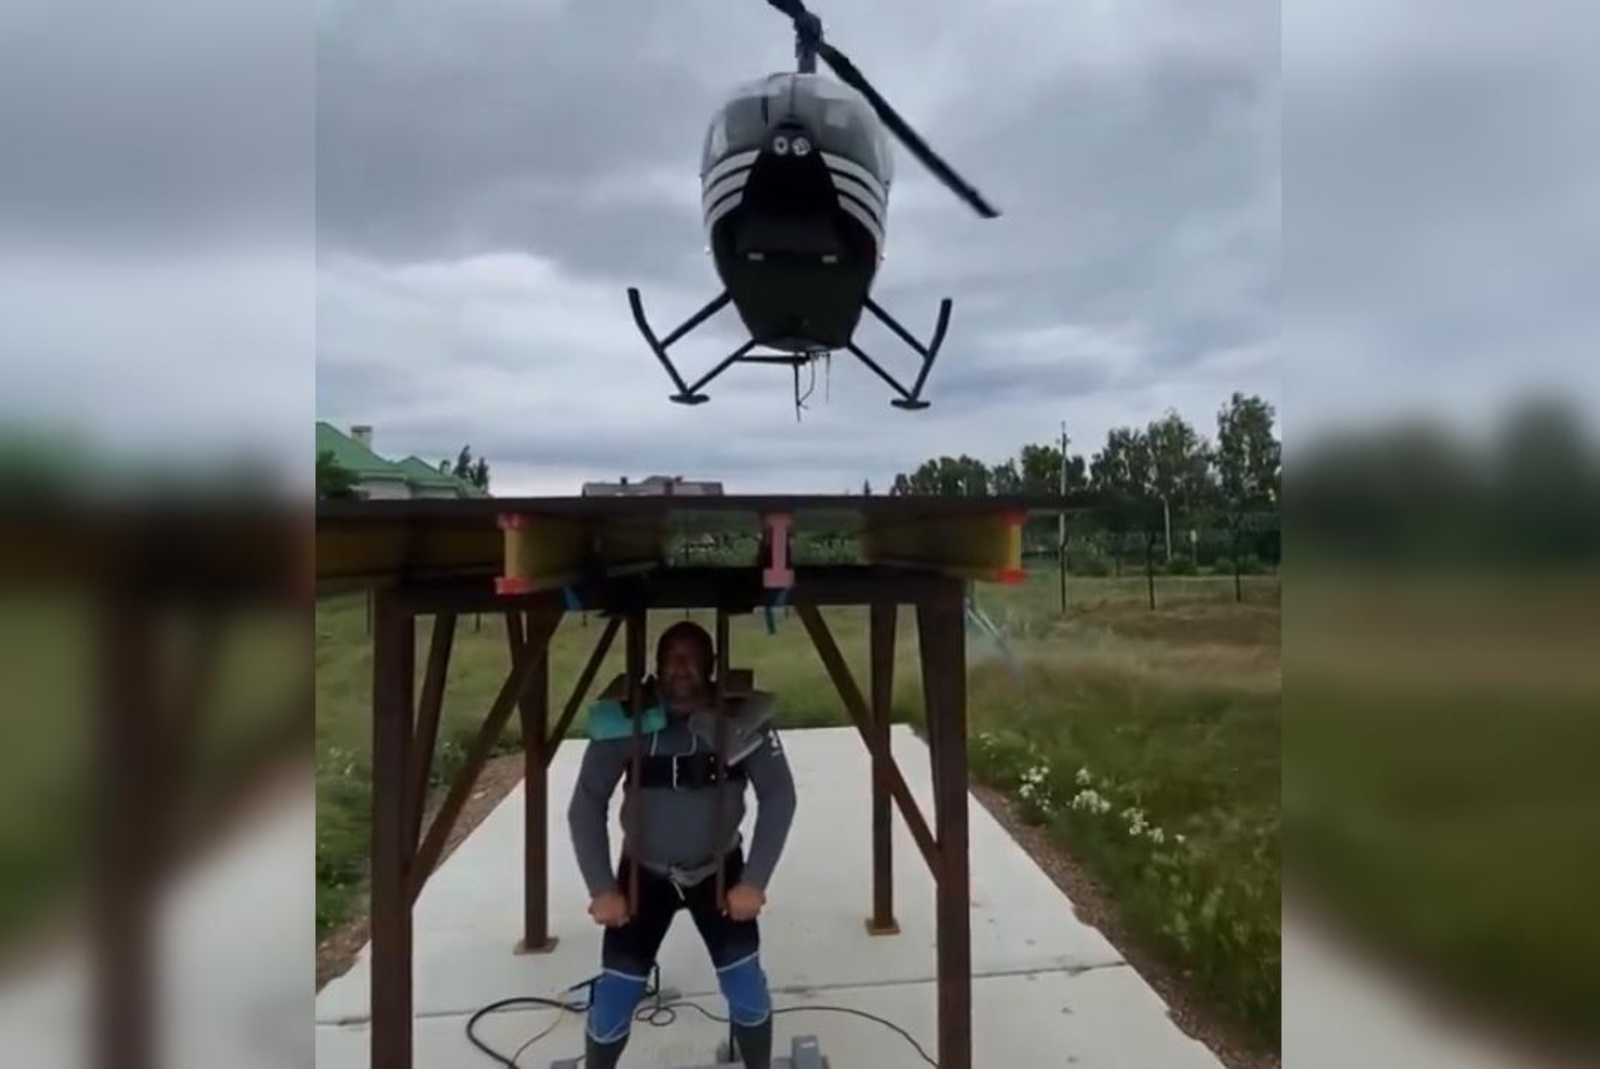 Эльбрус Нигматуллин поднял вертолёт весом 1476 кг и установил рекорд